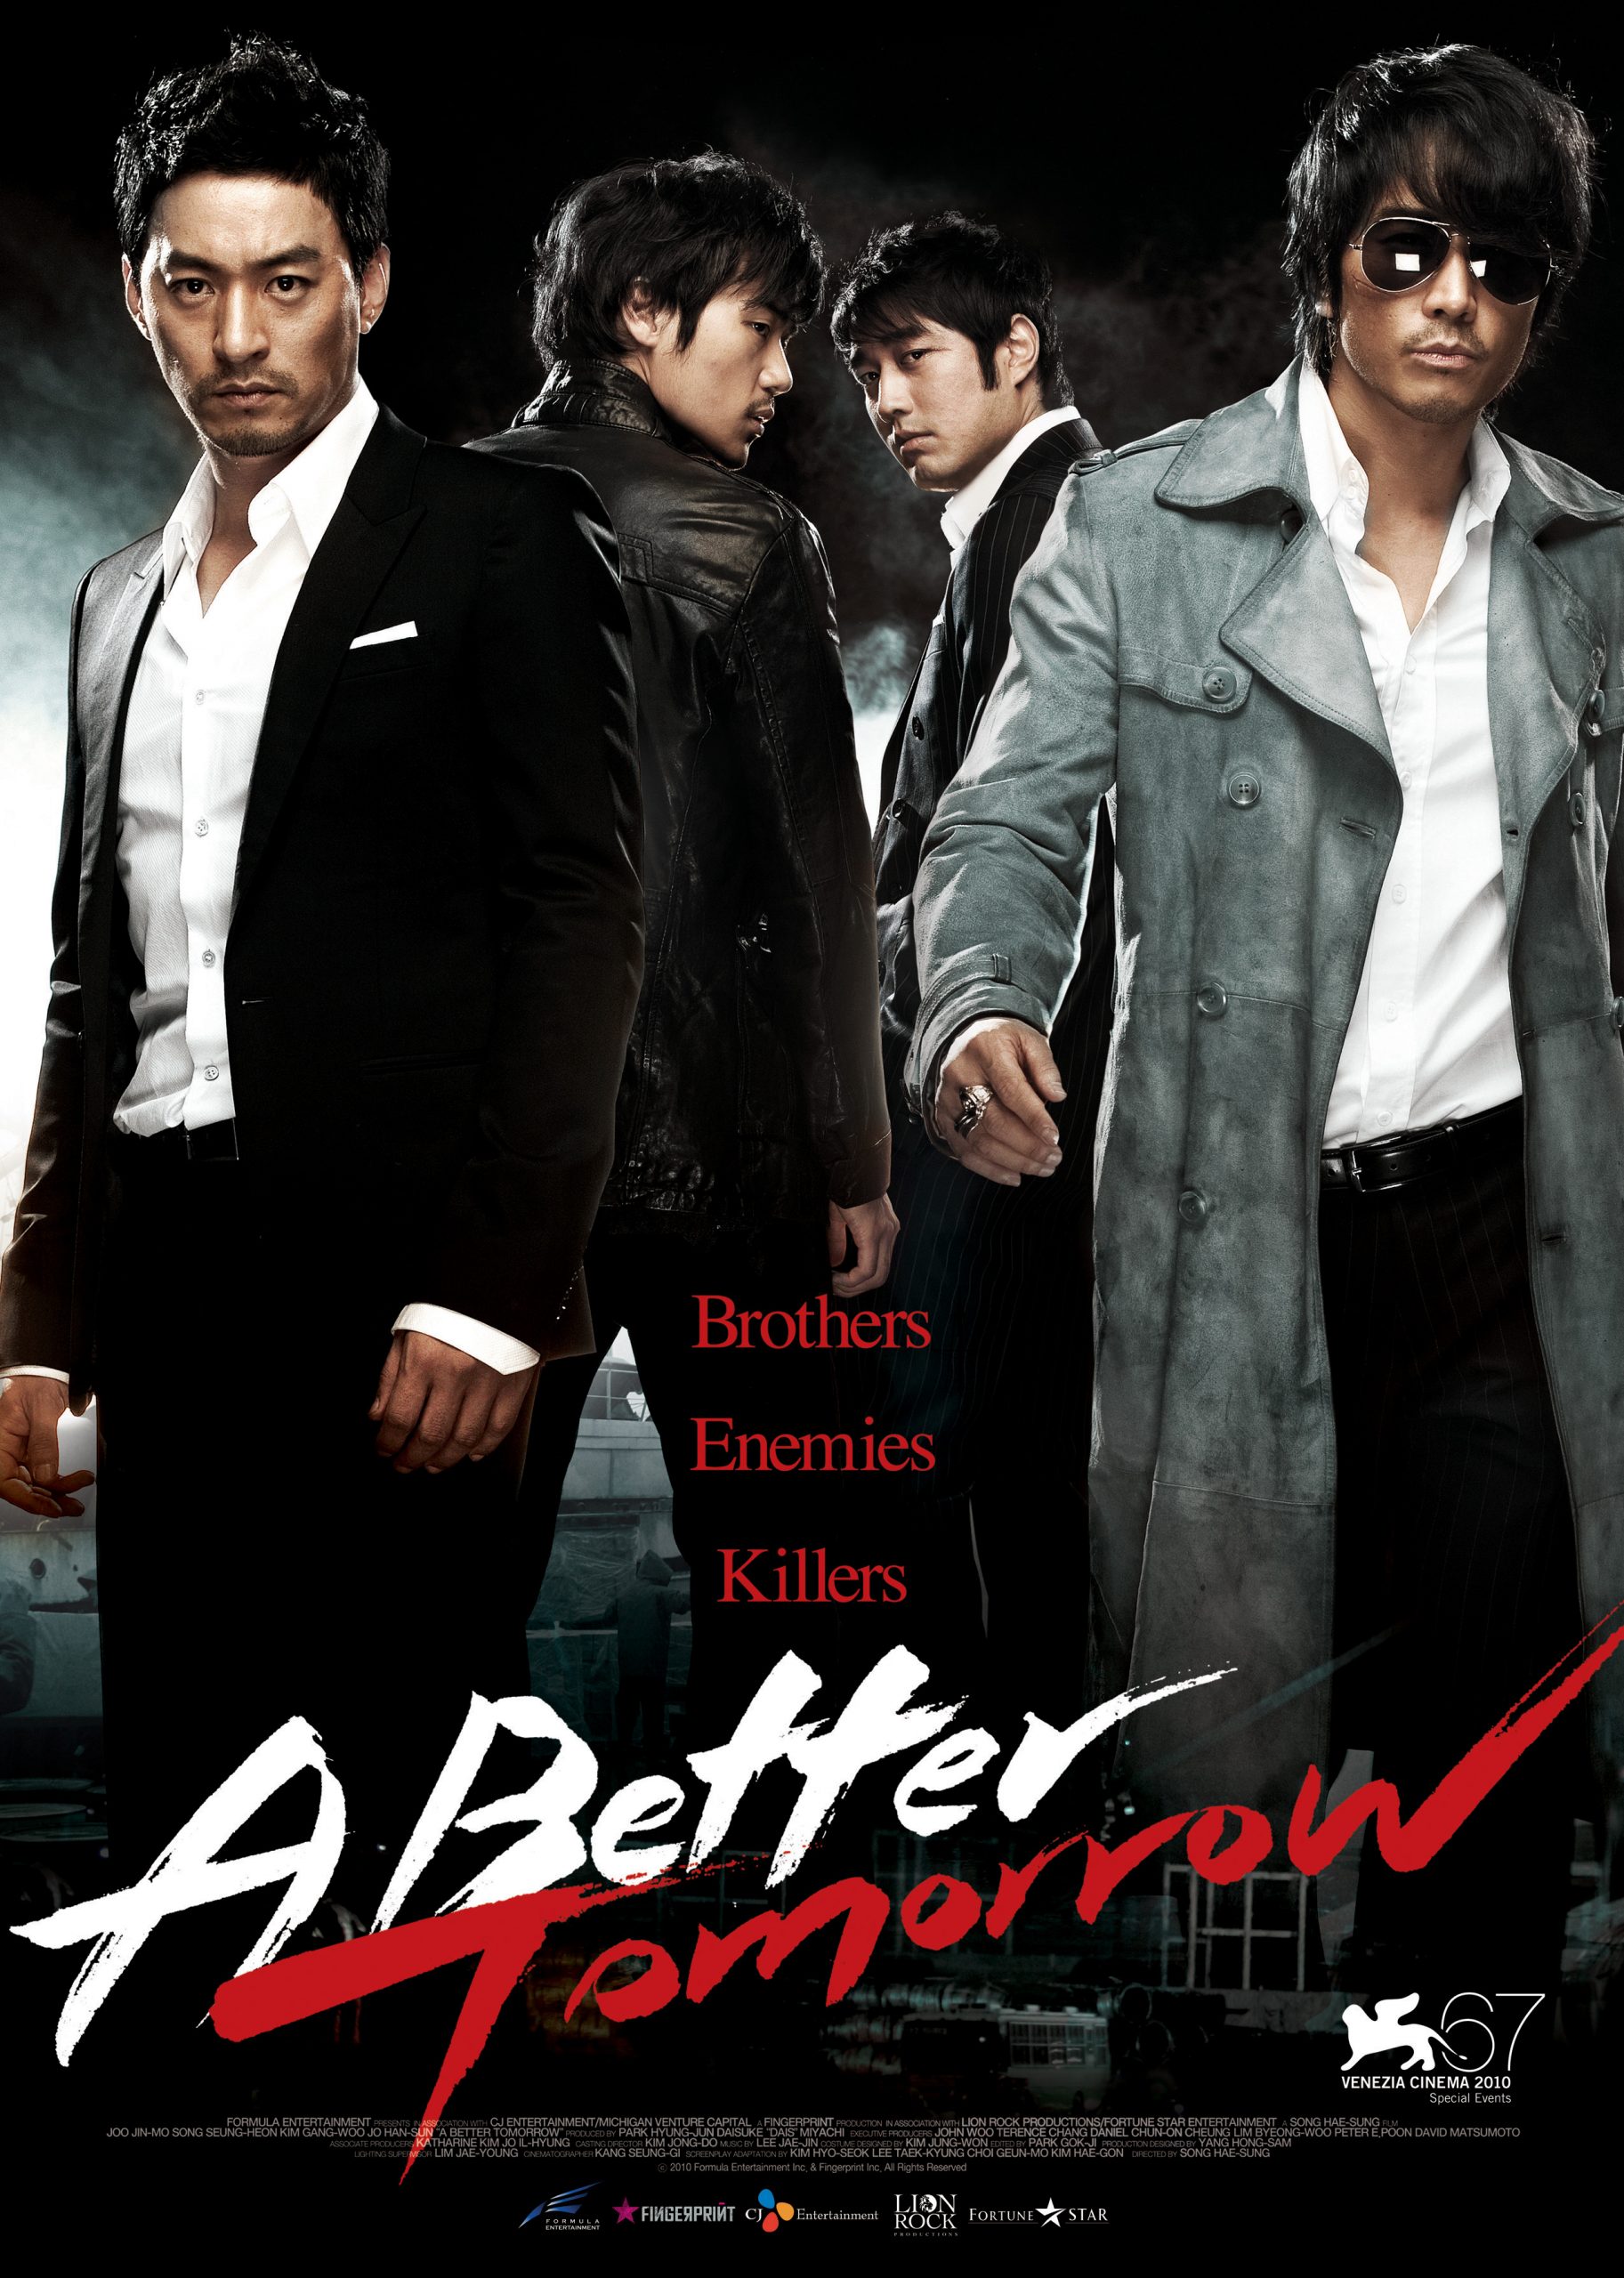 ดูหนังออนไลน์ฟรี A Better Tomorrow (2010) โหด เลว ดี